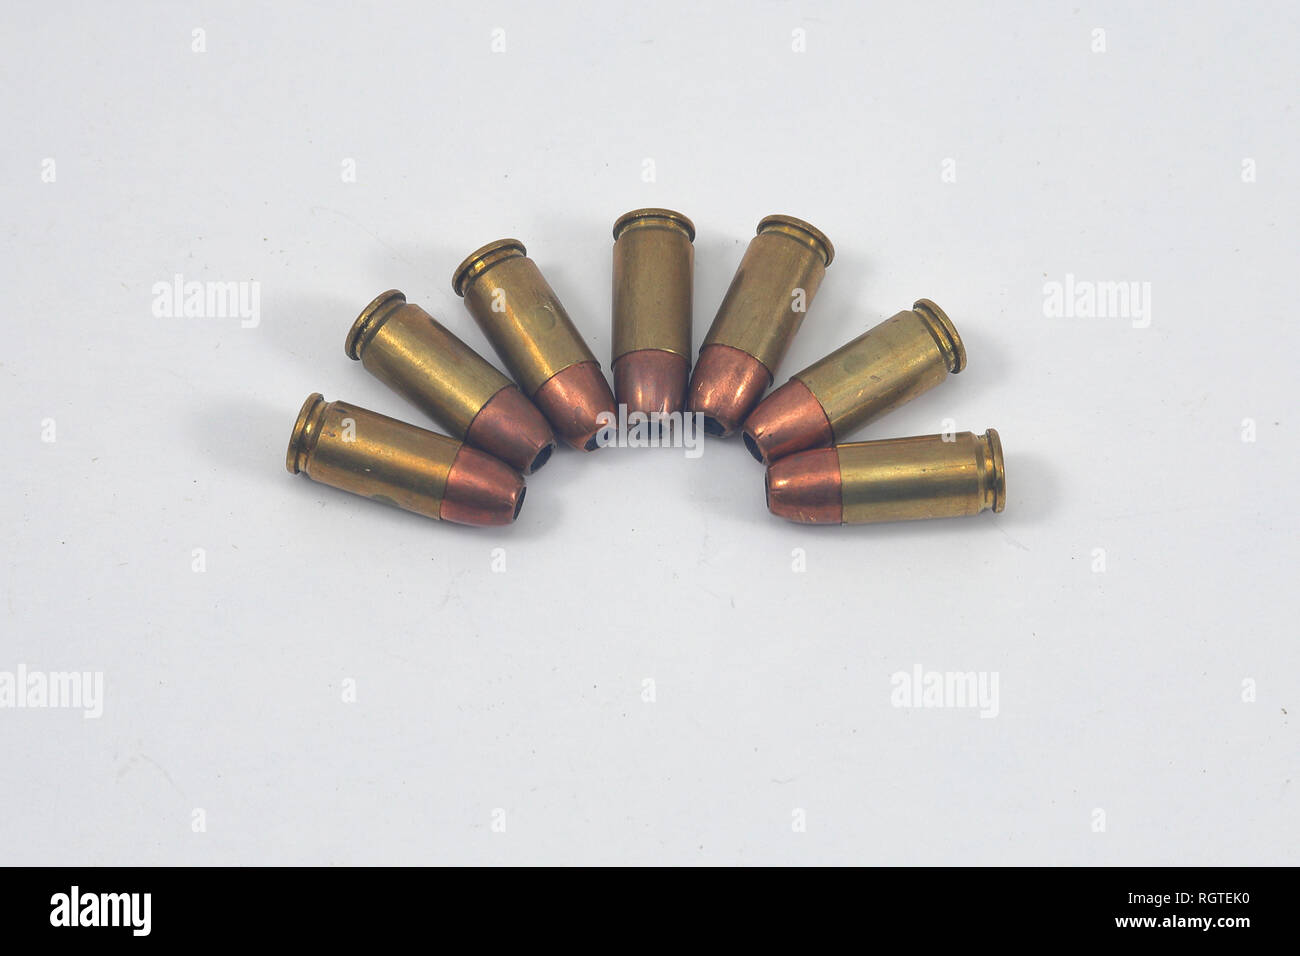 Munitions pistolet utilisé en semi-auto pistol, disposés sur un fond blanc Banque D'Images